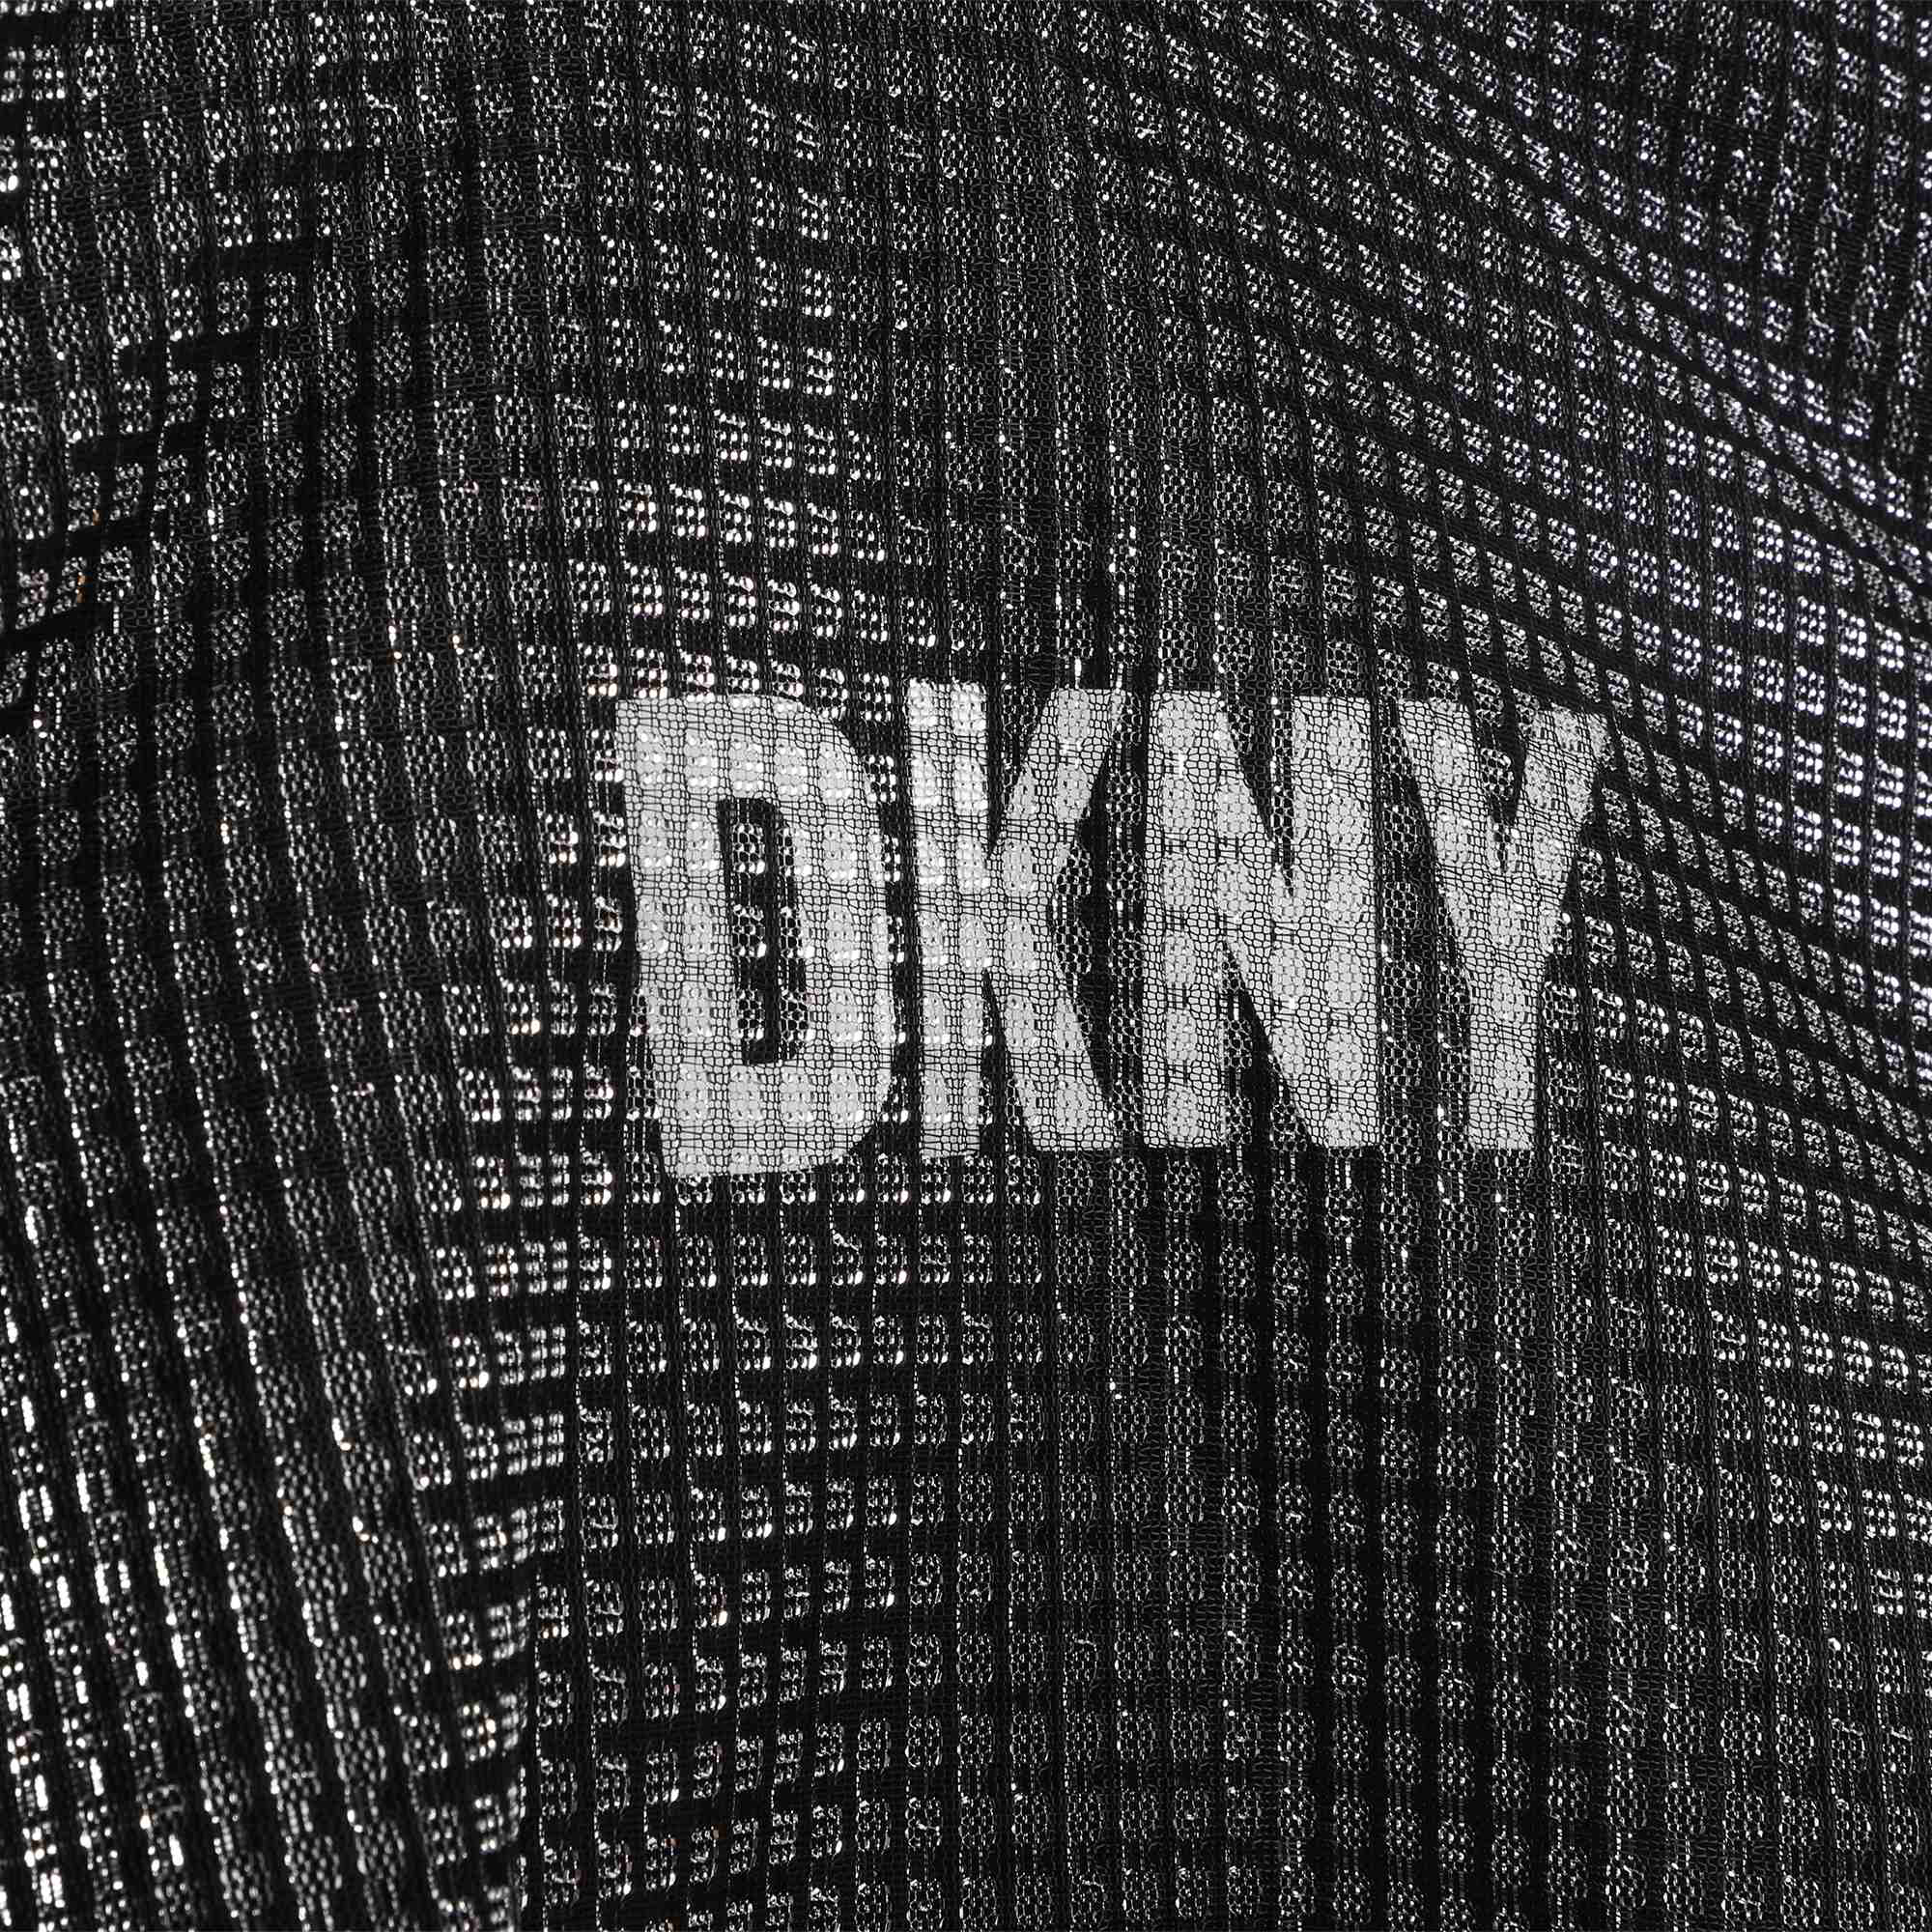 Feestelijk T-shirt van netstof DKNY Voor